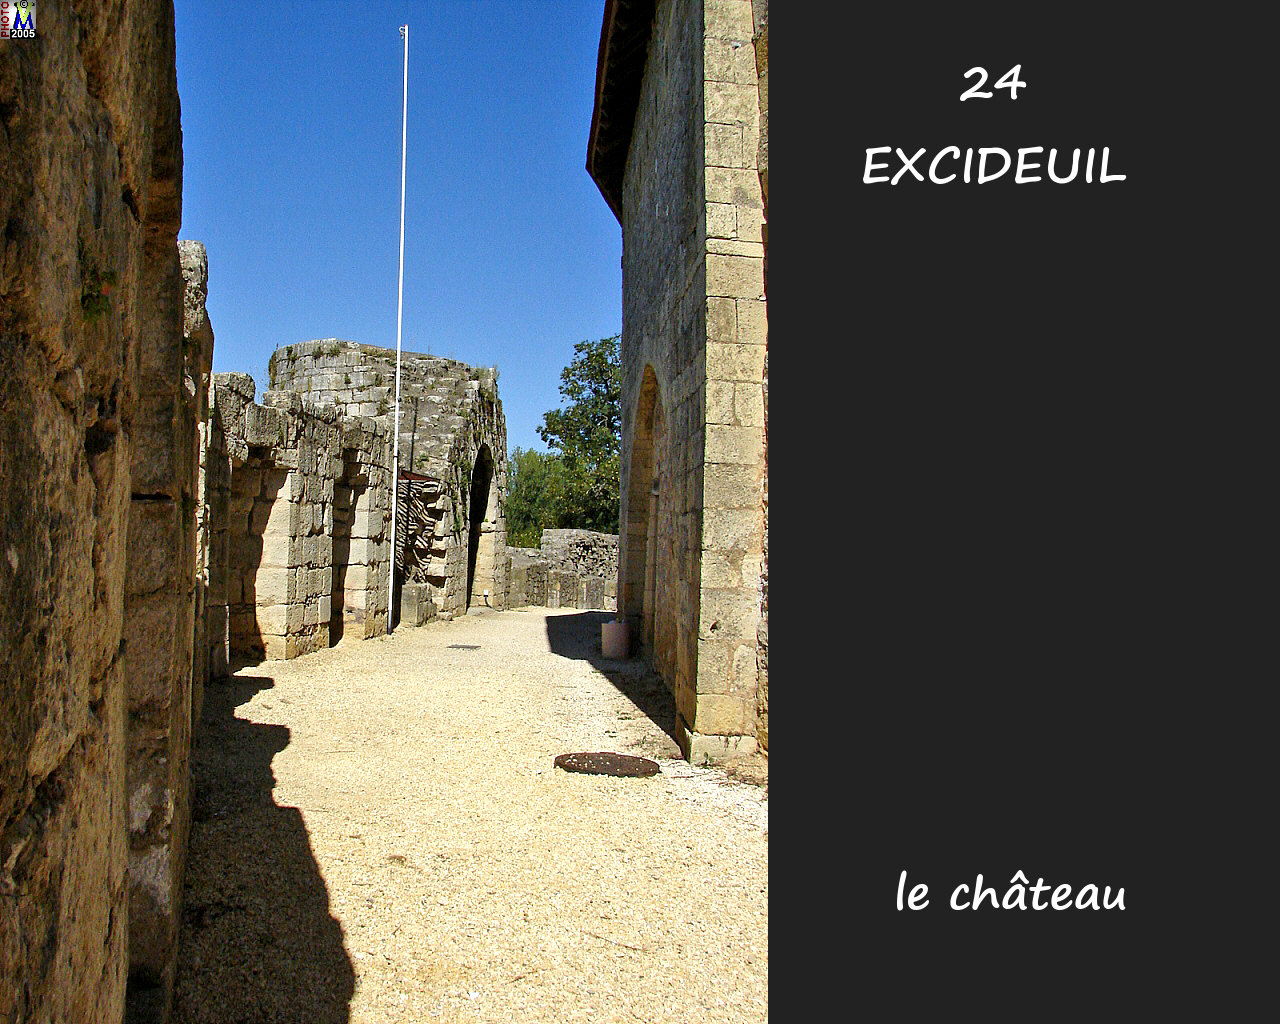 24EXCIDEUIL_chateau_128.jpg